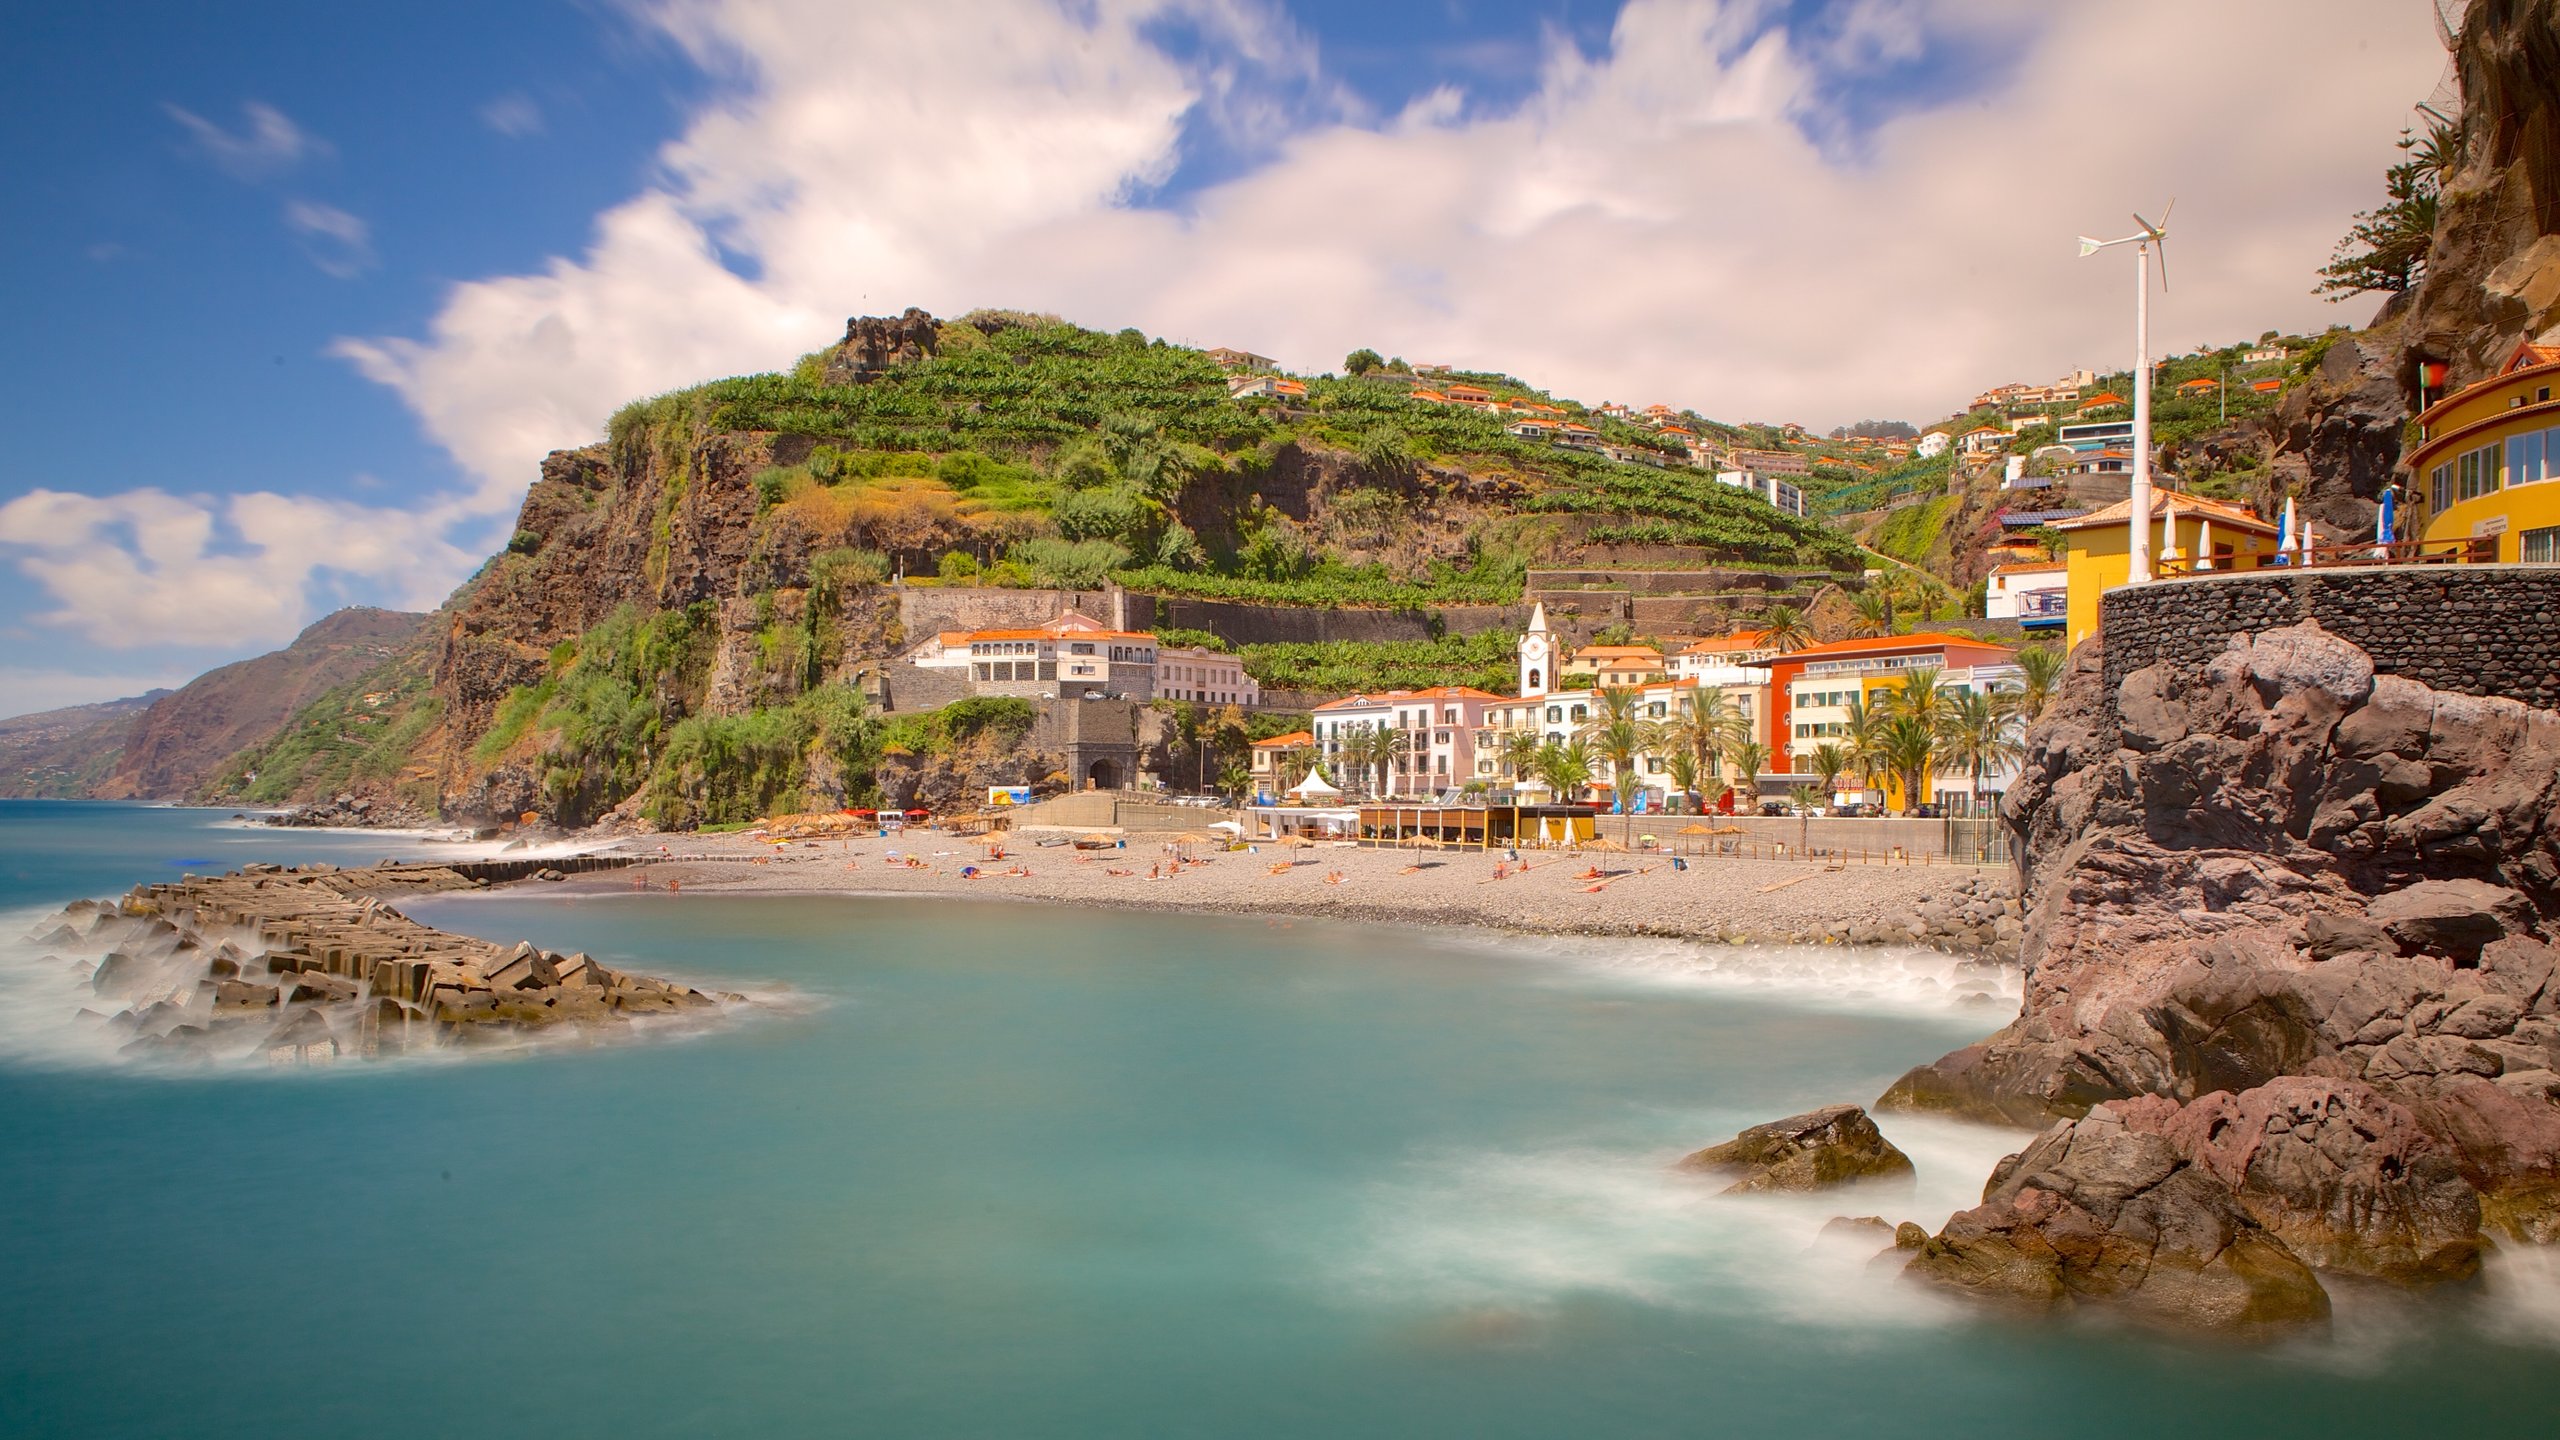 Descubrimientos y colonizaciones (1): "El archipiélago de Madeira"